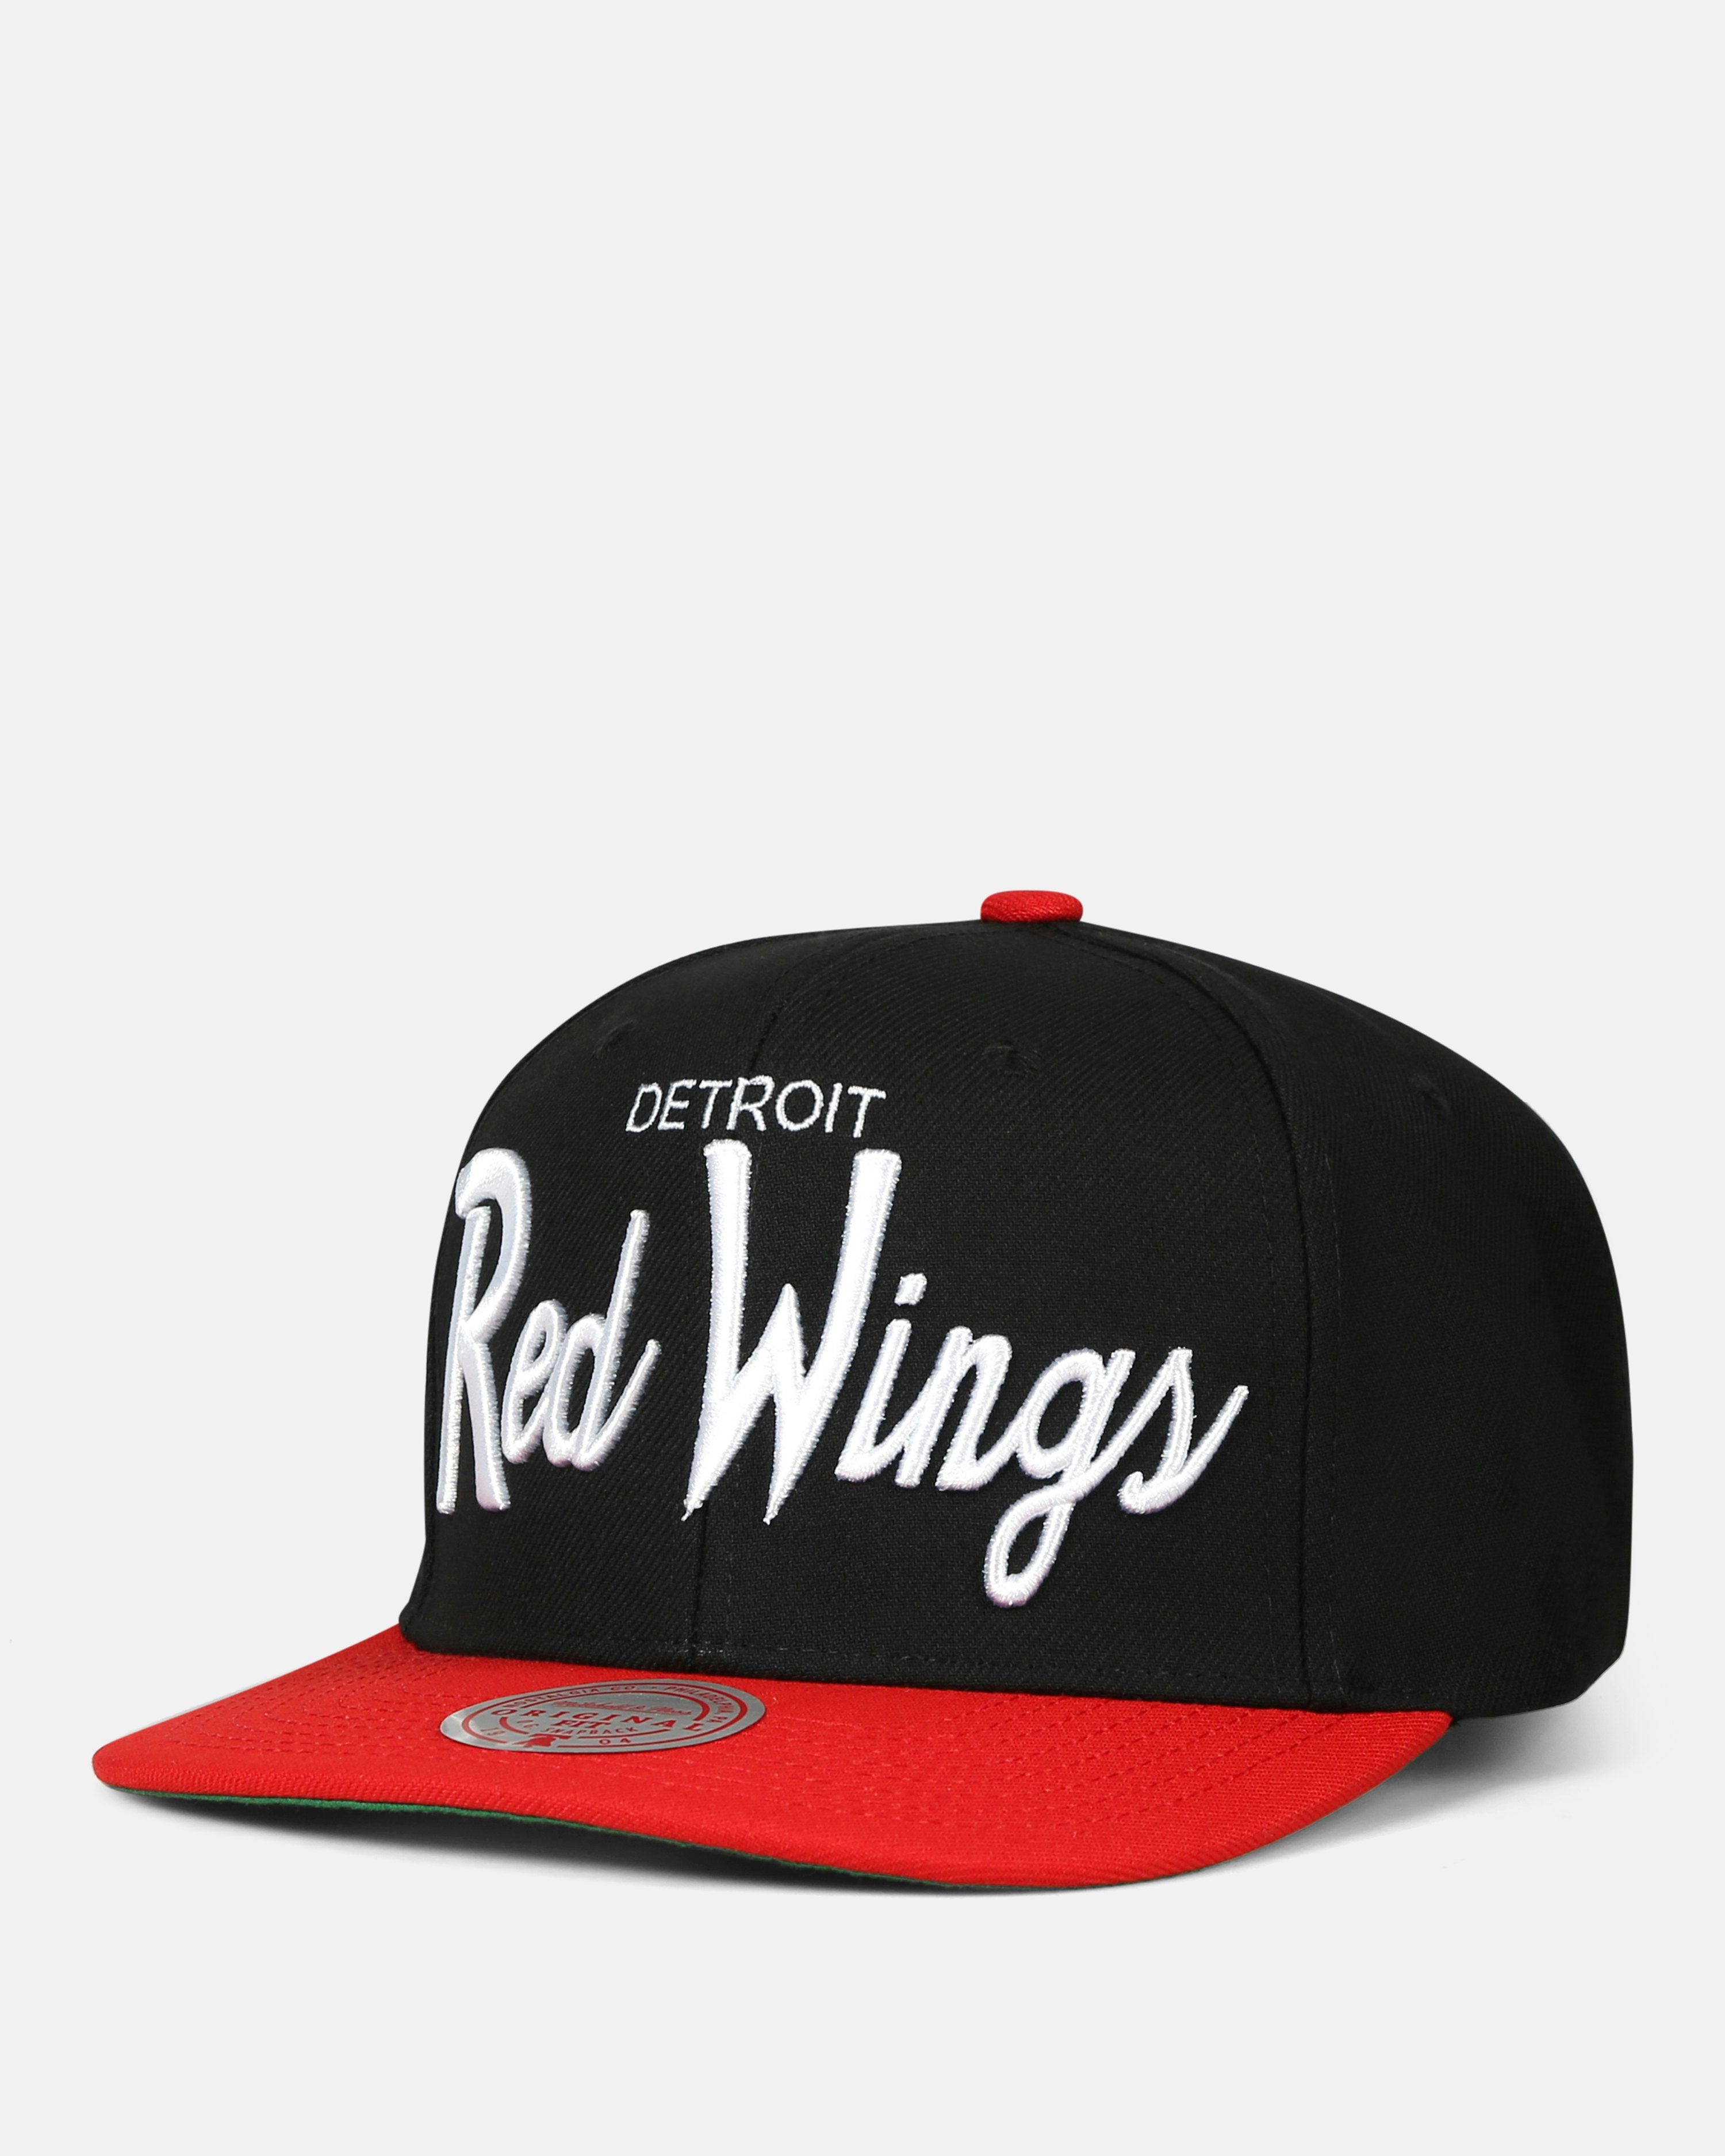 Vintage Detroit Red Wings Snapback